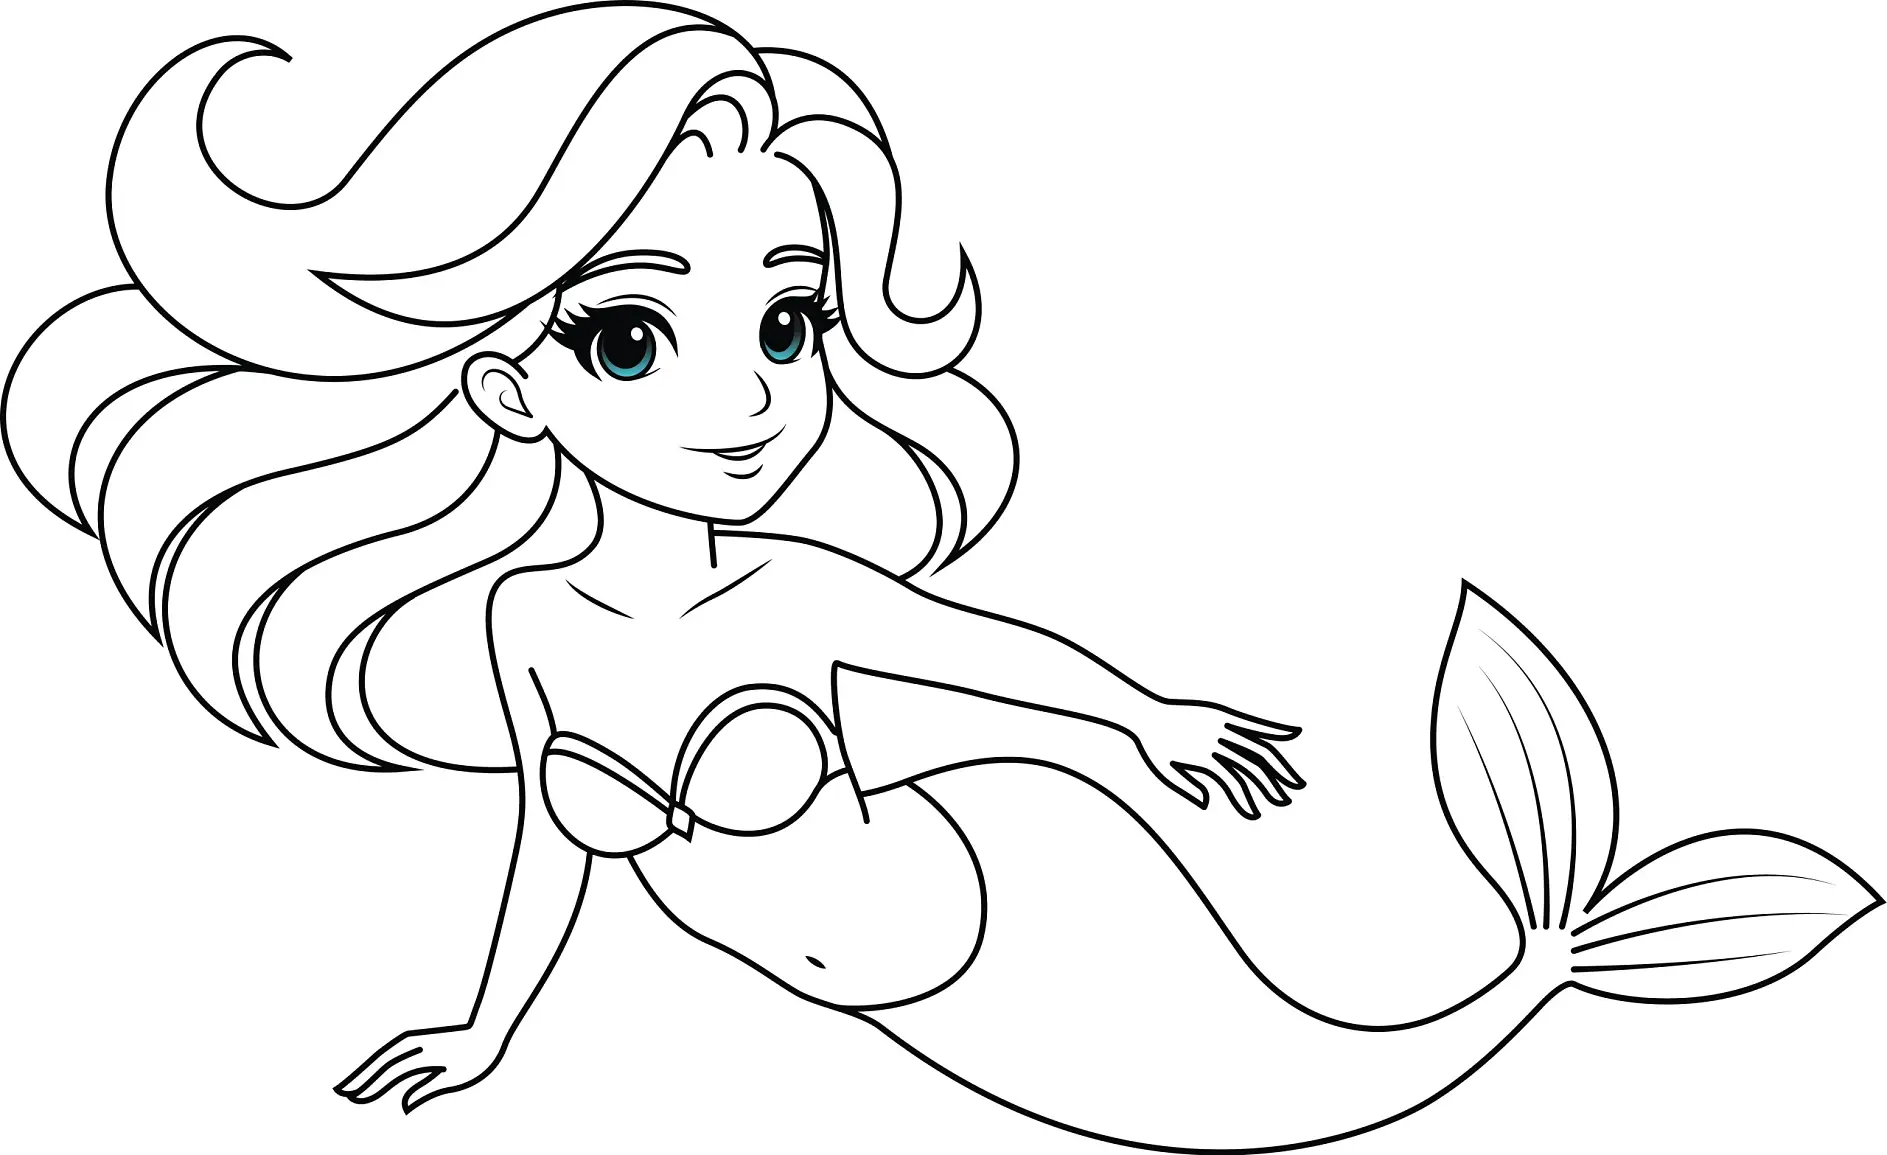 Ausmalbild Meerjungfrau schwimmt mit welligem Haar und lächelt